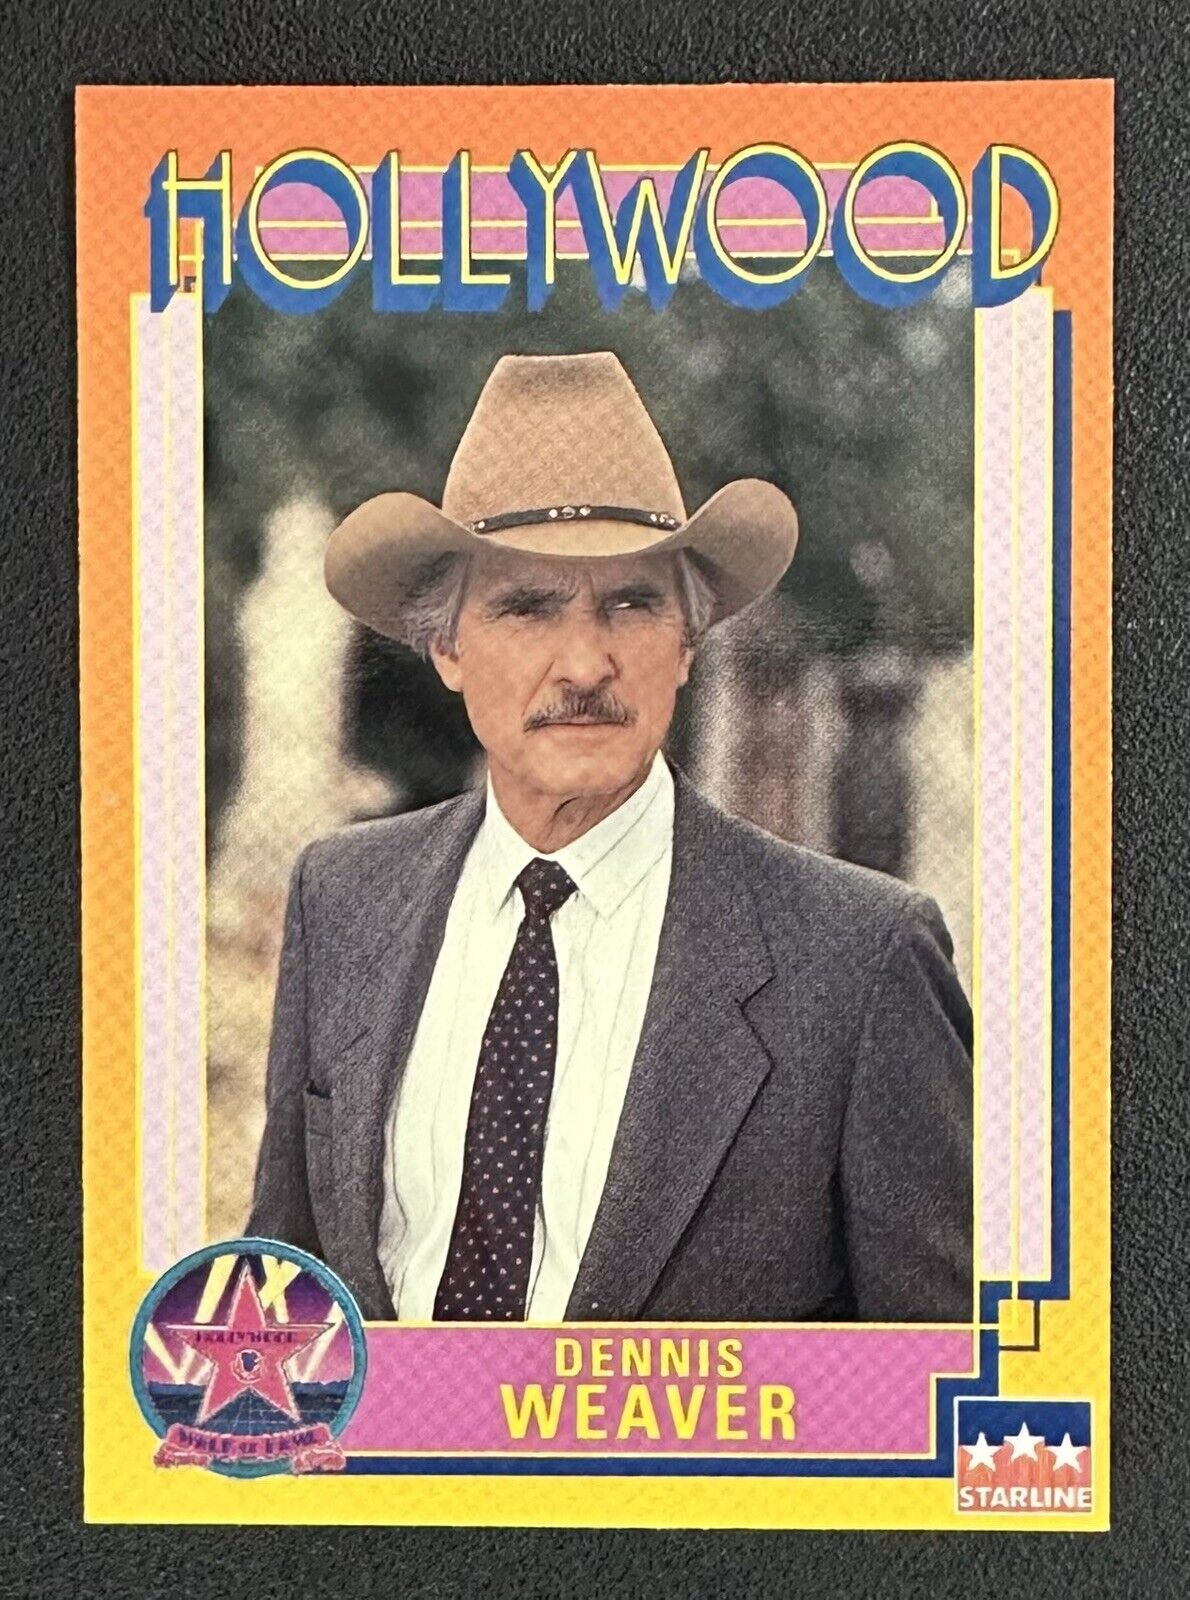 1991 Starline DENNIS WEAVER #45 Hollywood Walk of Fame card in Toploader